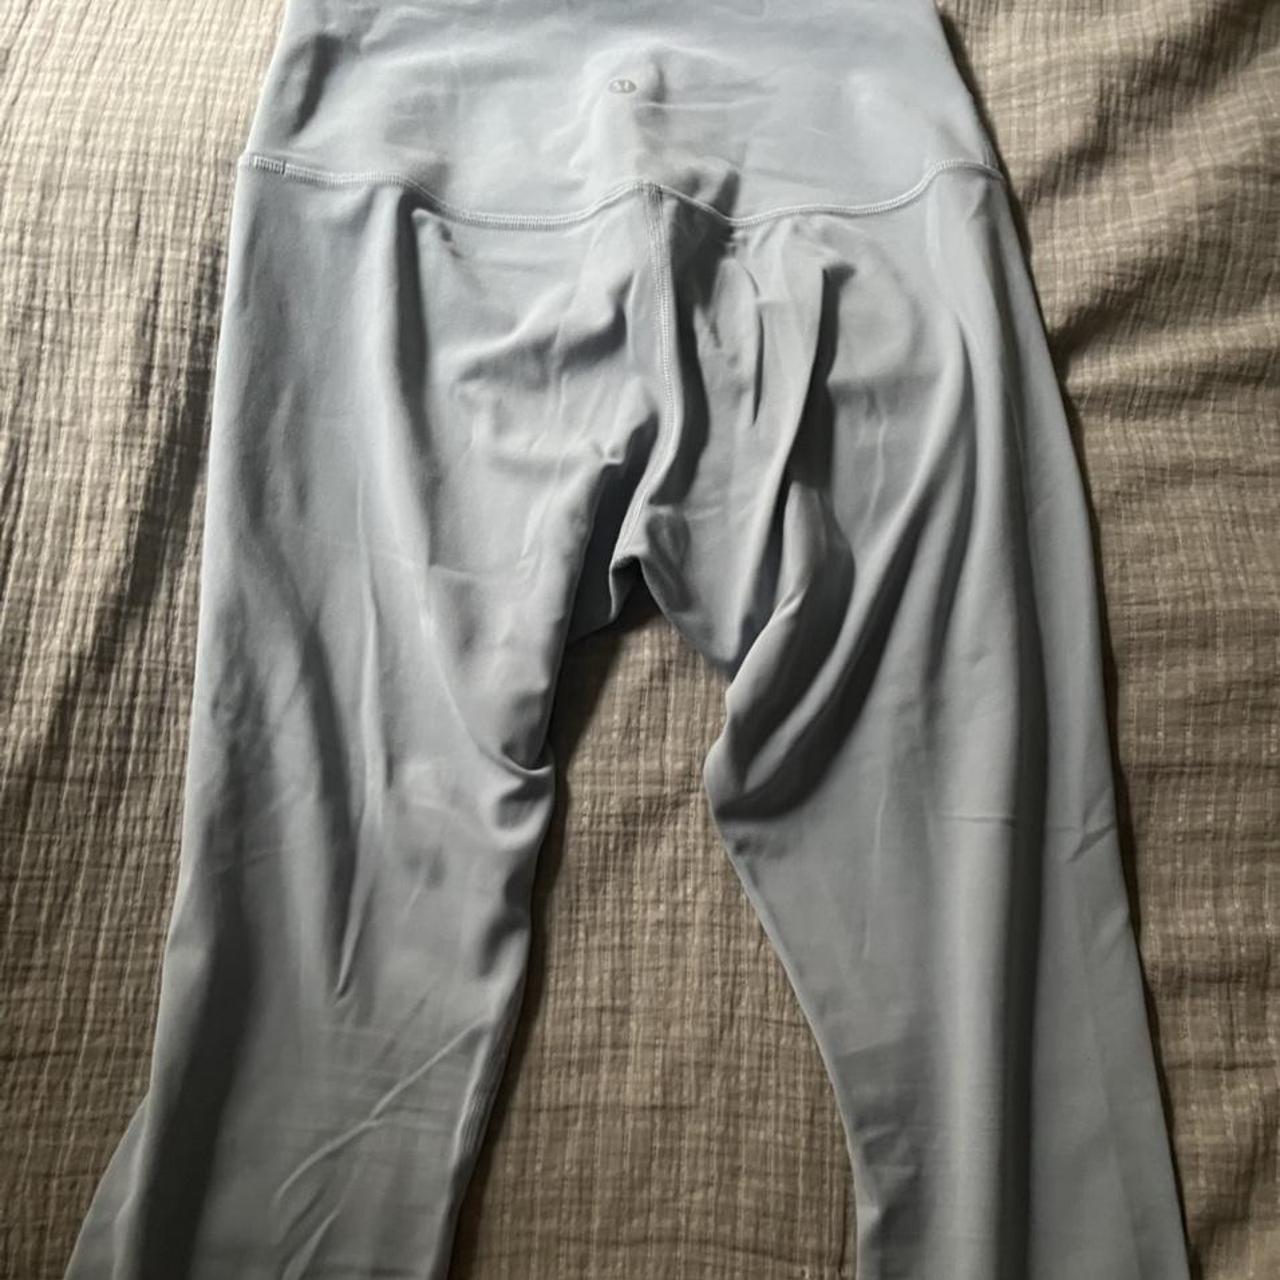 Lululemon Align leggings that are light blue. Size 8